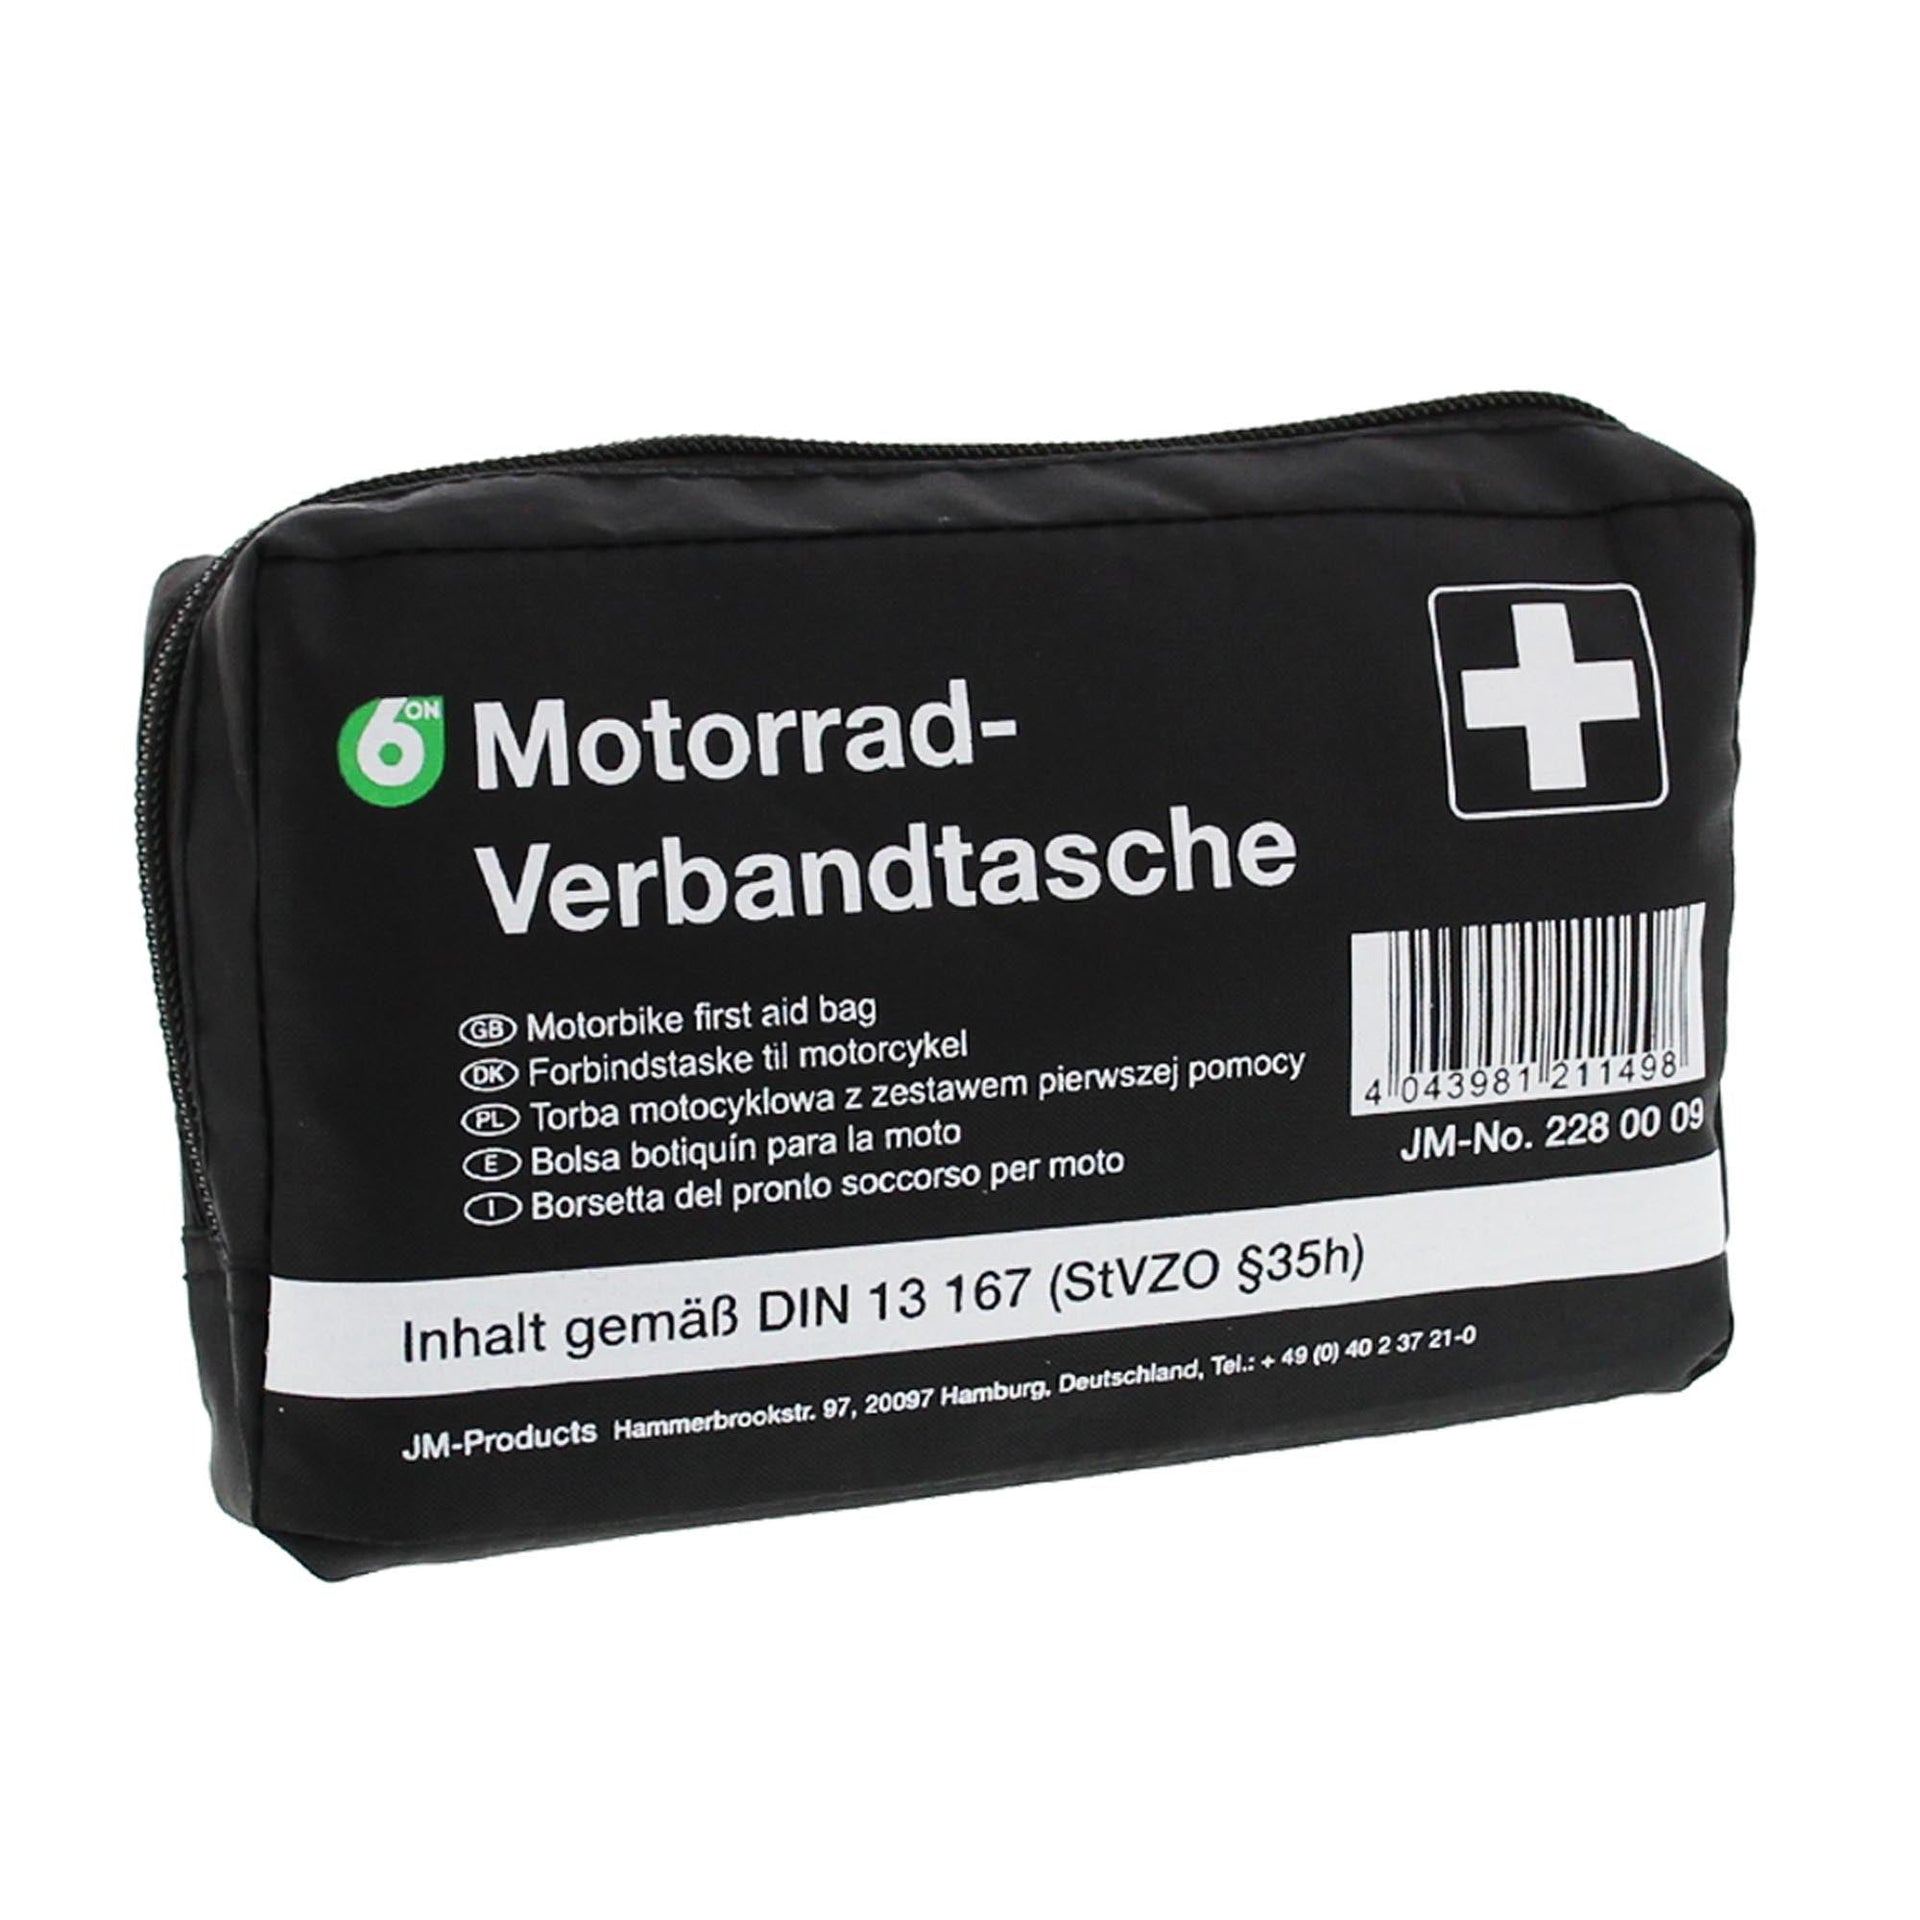 Motorrad-Verbandtasche DIN 13 167 - GRAMM - 418.035.16700